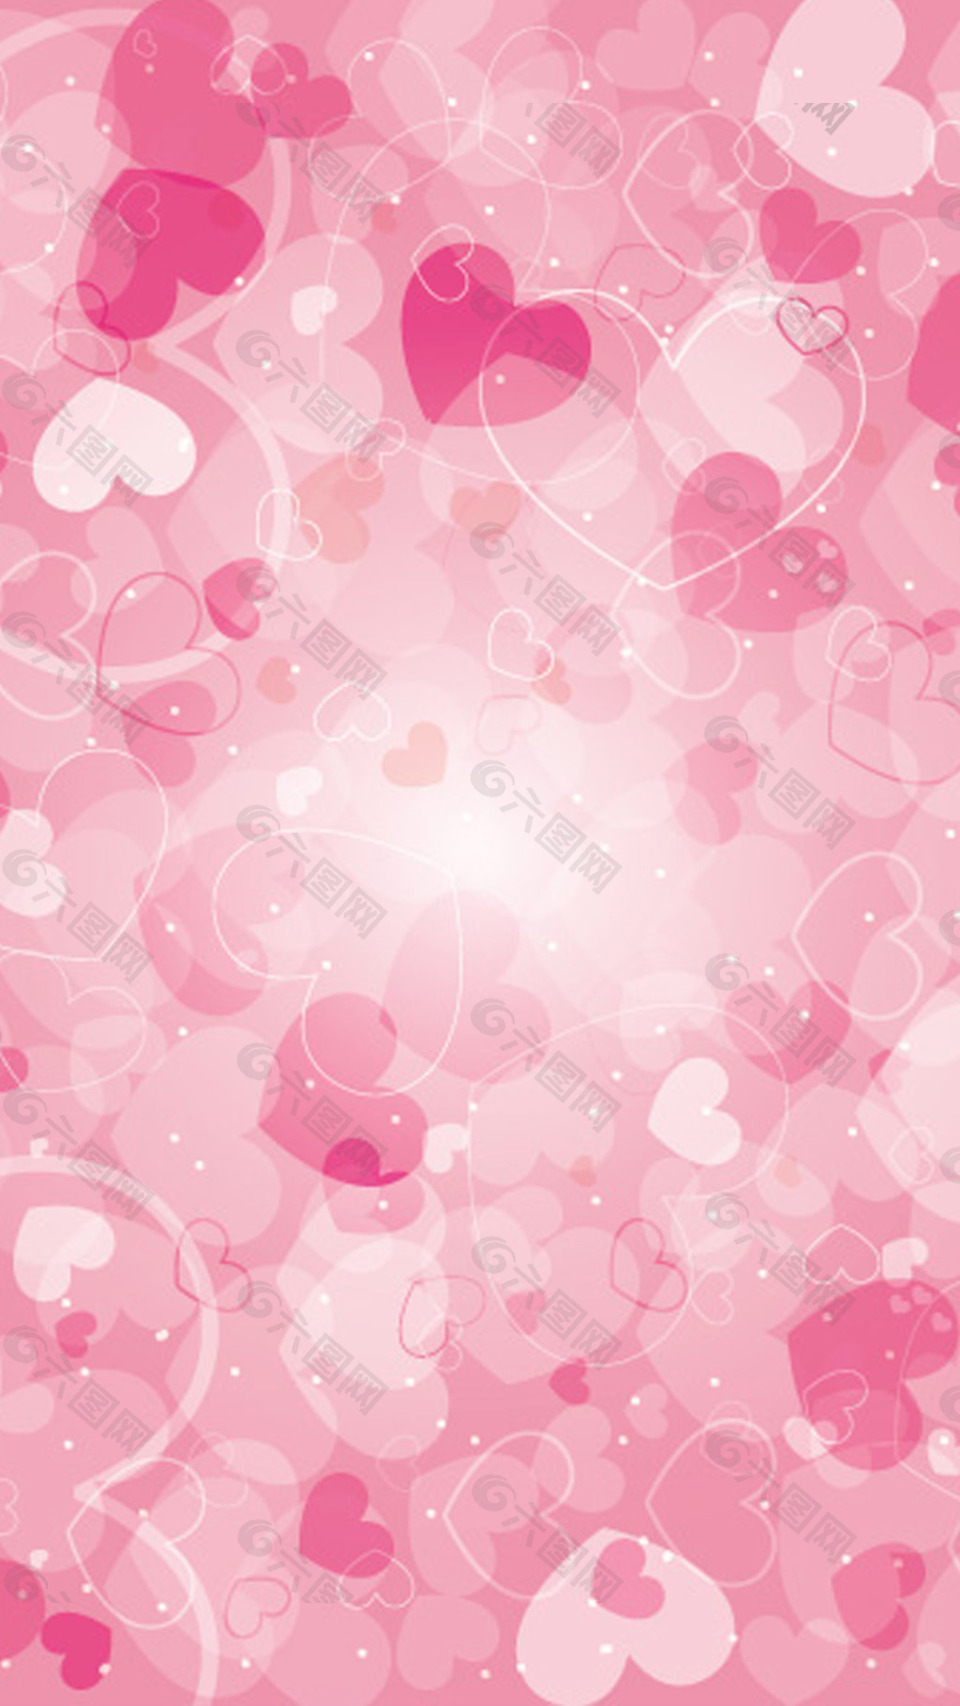 唯美粉色心形h5背景素材